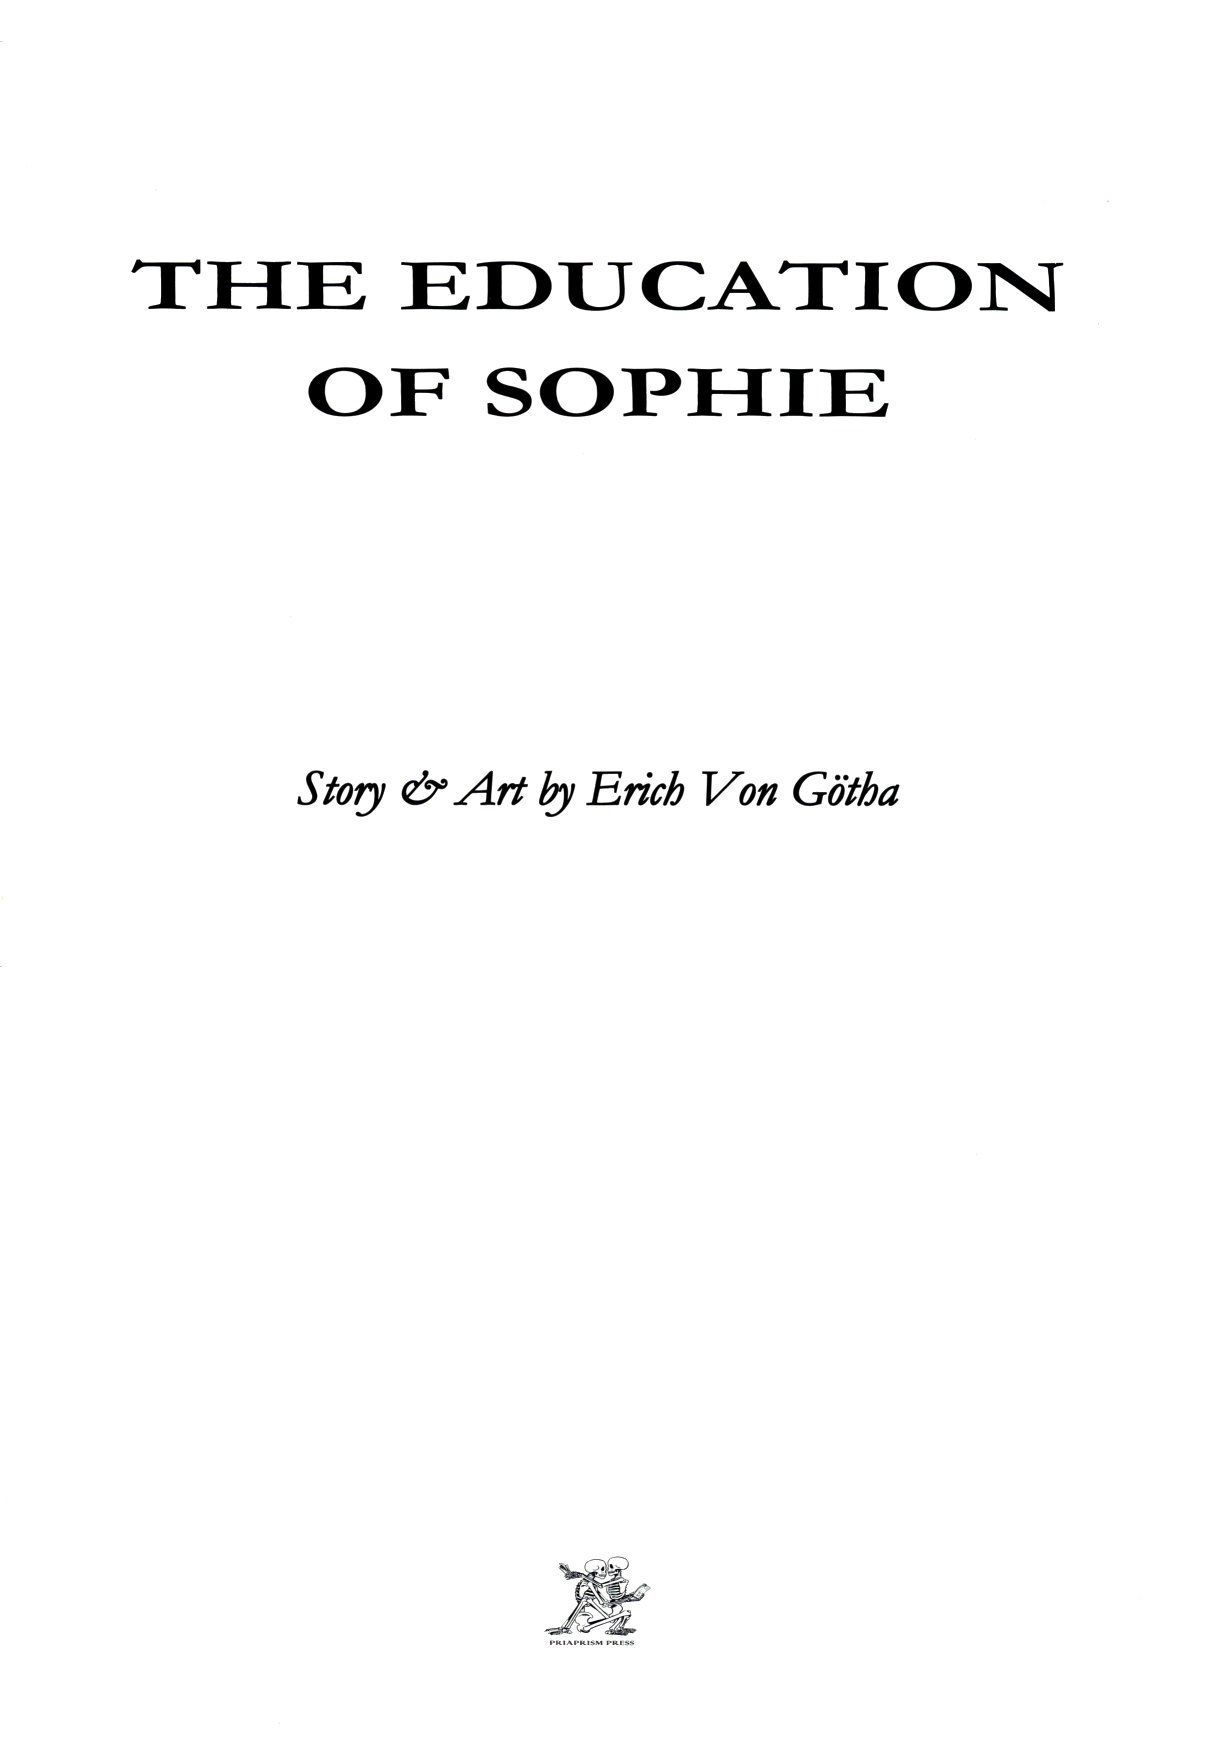 erich Von gotha die Bildung der Sophie